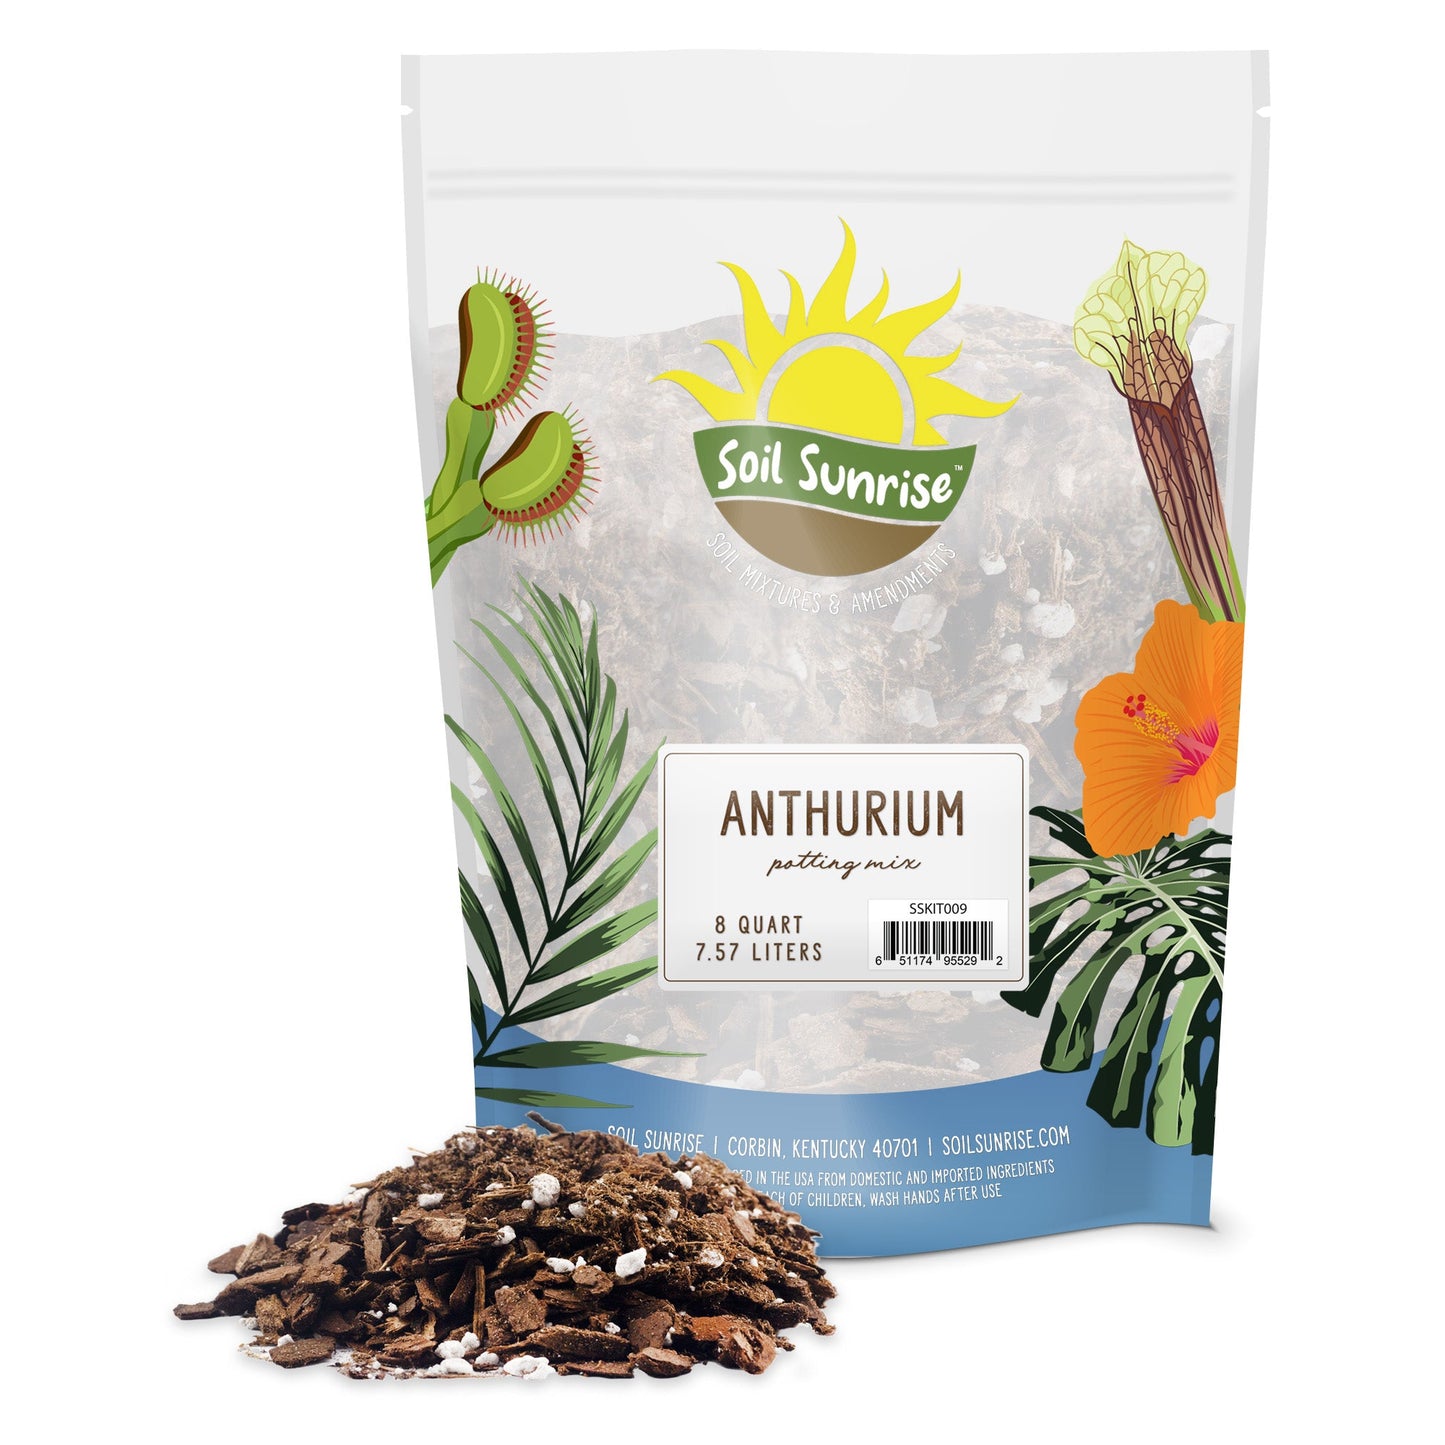 Anthurium Plant Potting Soil Mix (8 Quarts) - SSKIT009